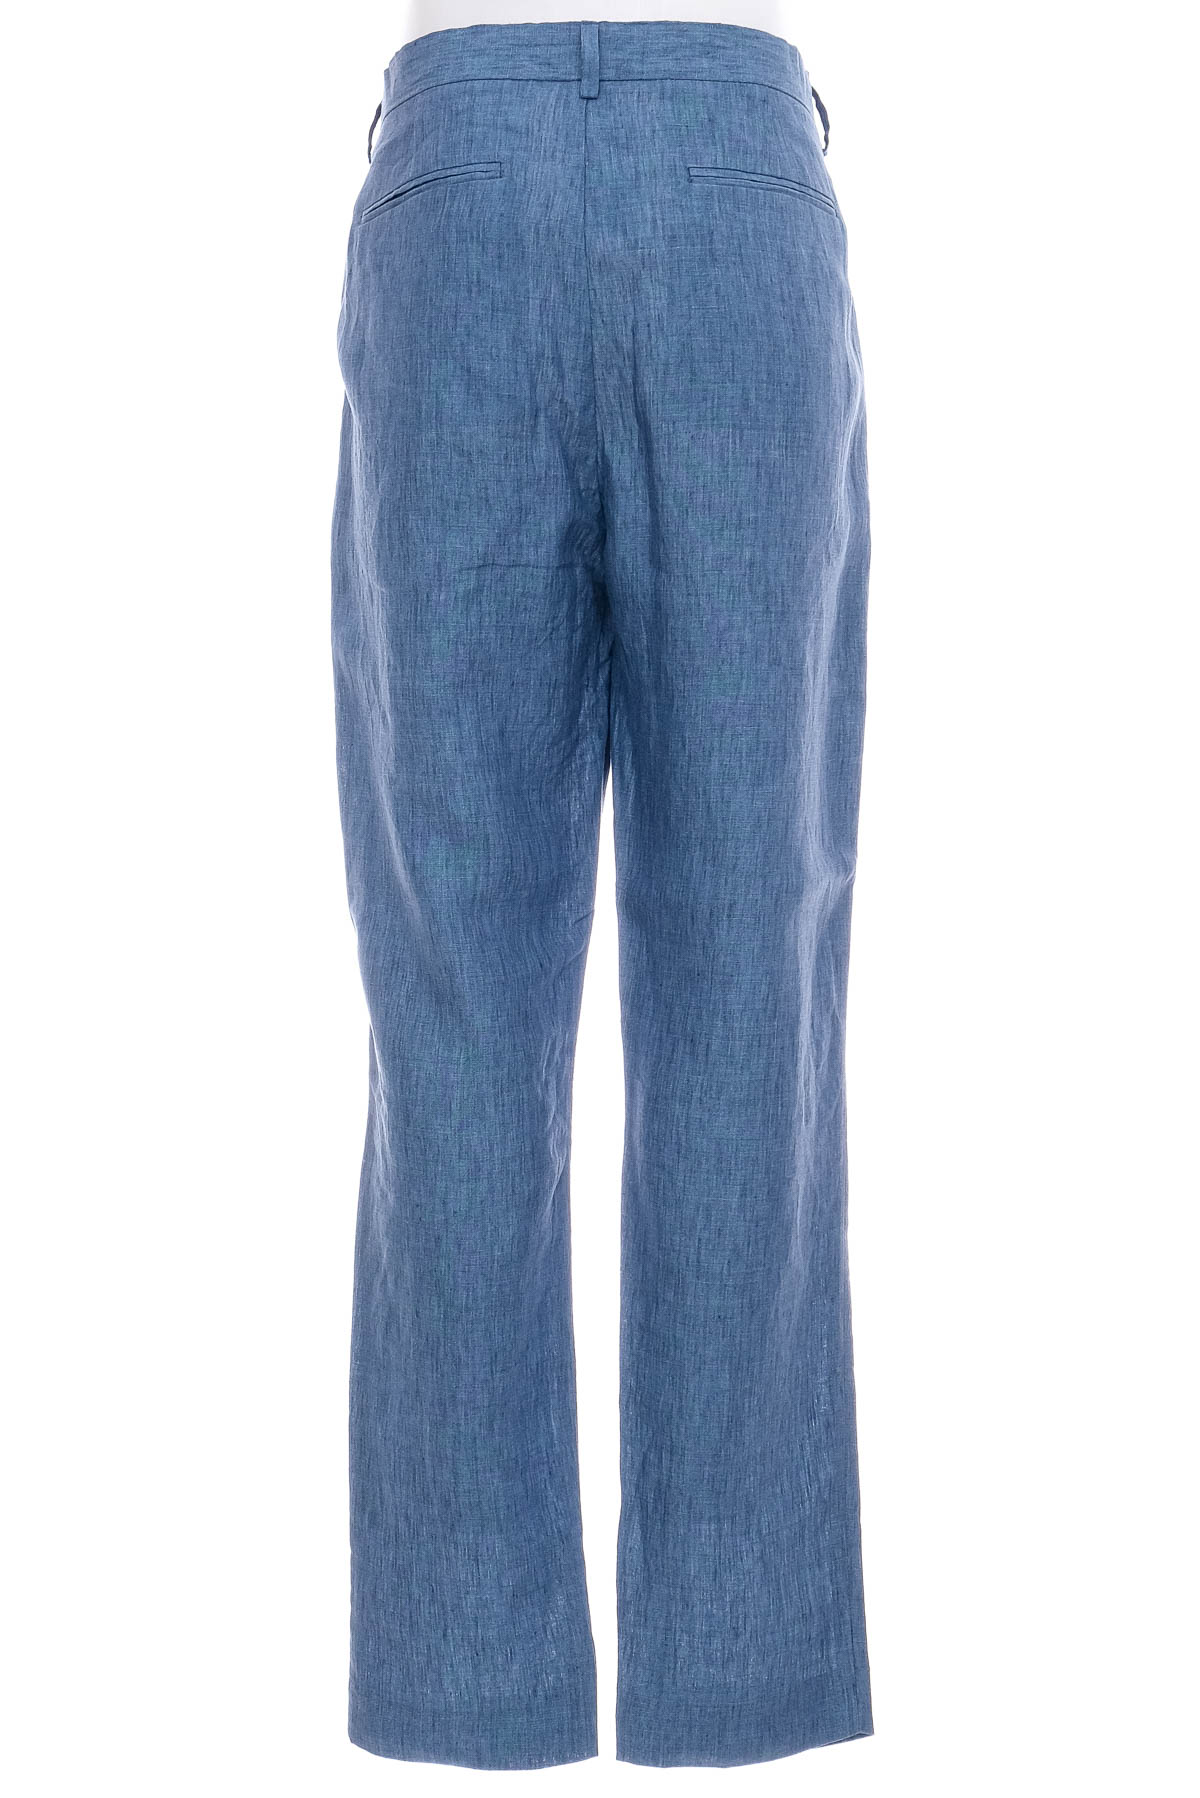 Pantalon pentru bărbați - H&M - 1